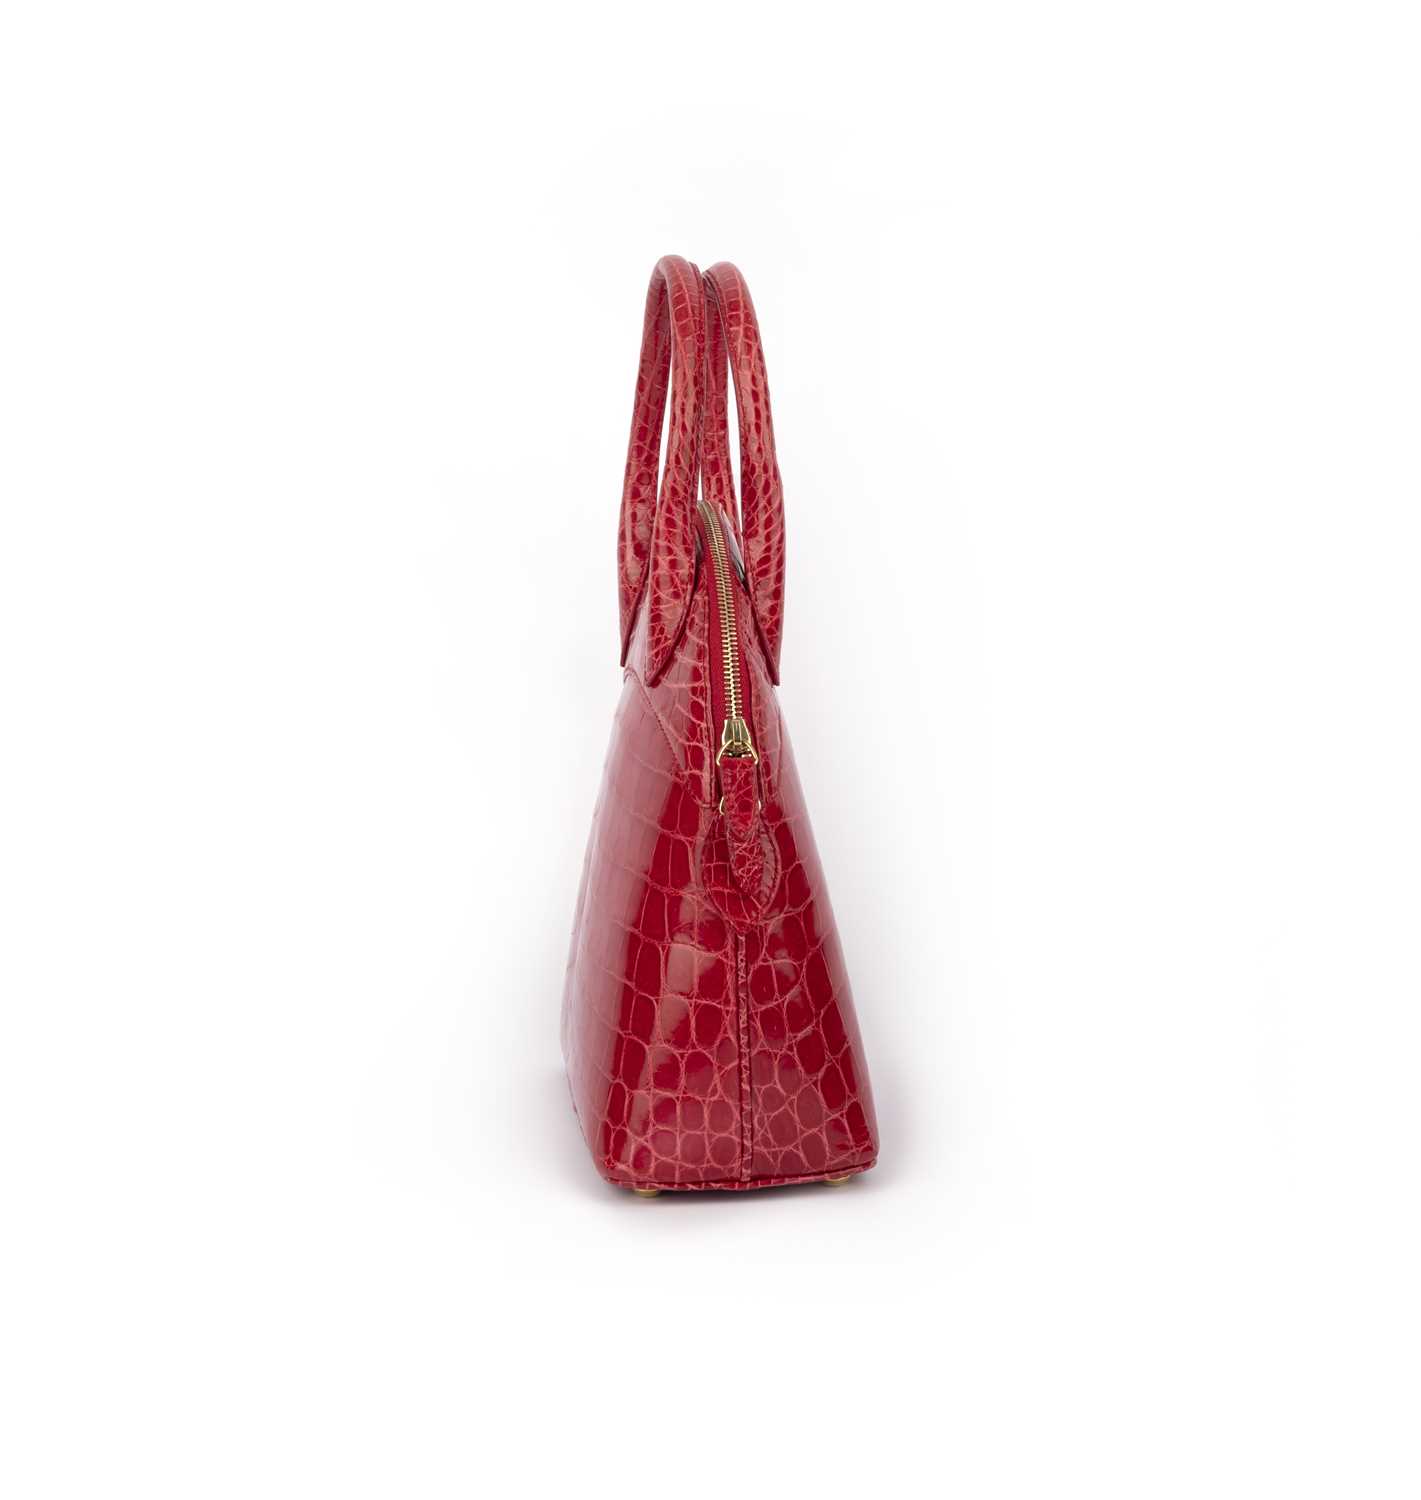 λ Asprey, a raspberry crocodile top handle bag 24cm wide, 26cm high, 42cm strap drop, includes - Image 3 of 5